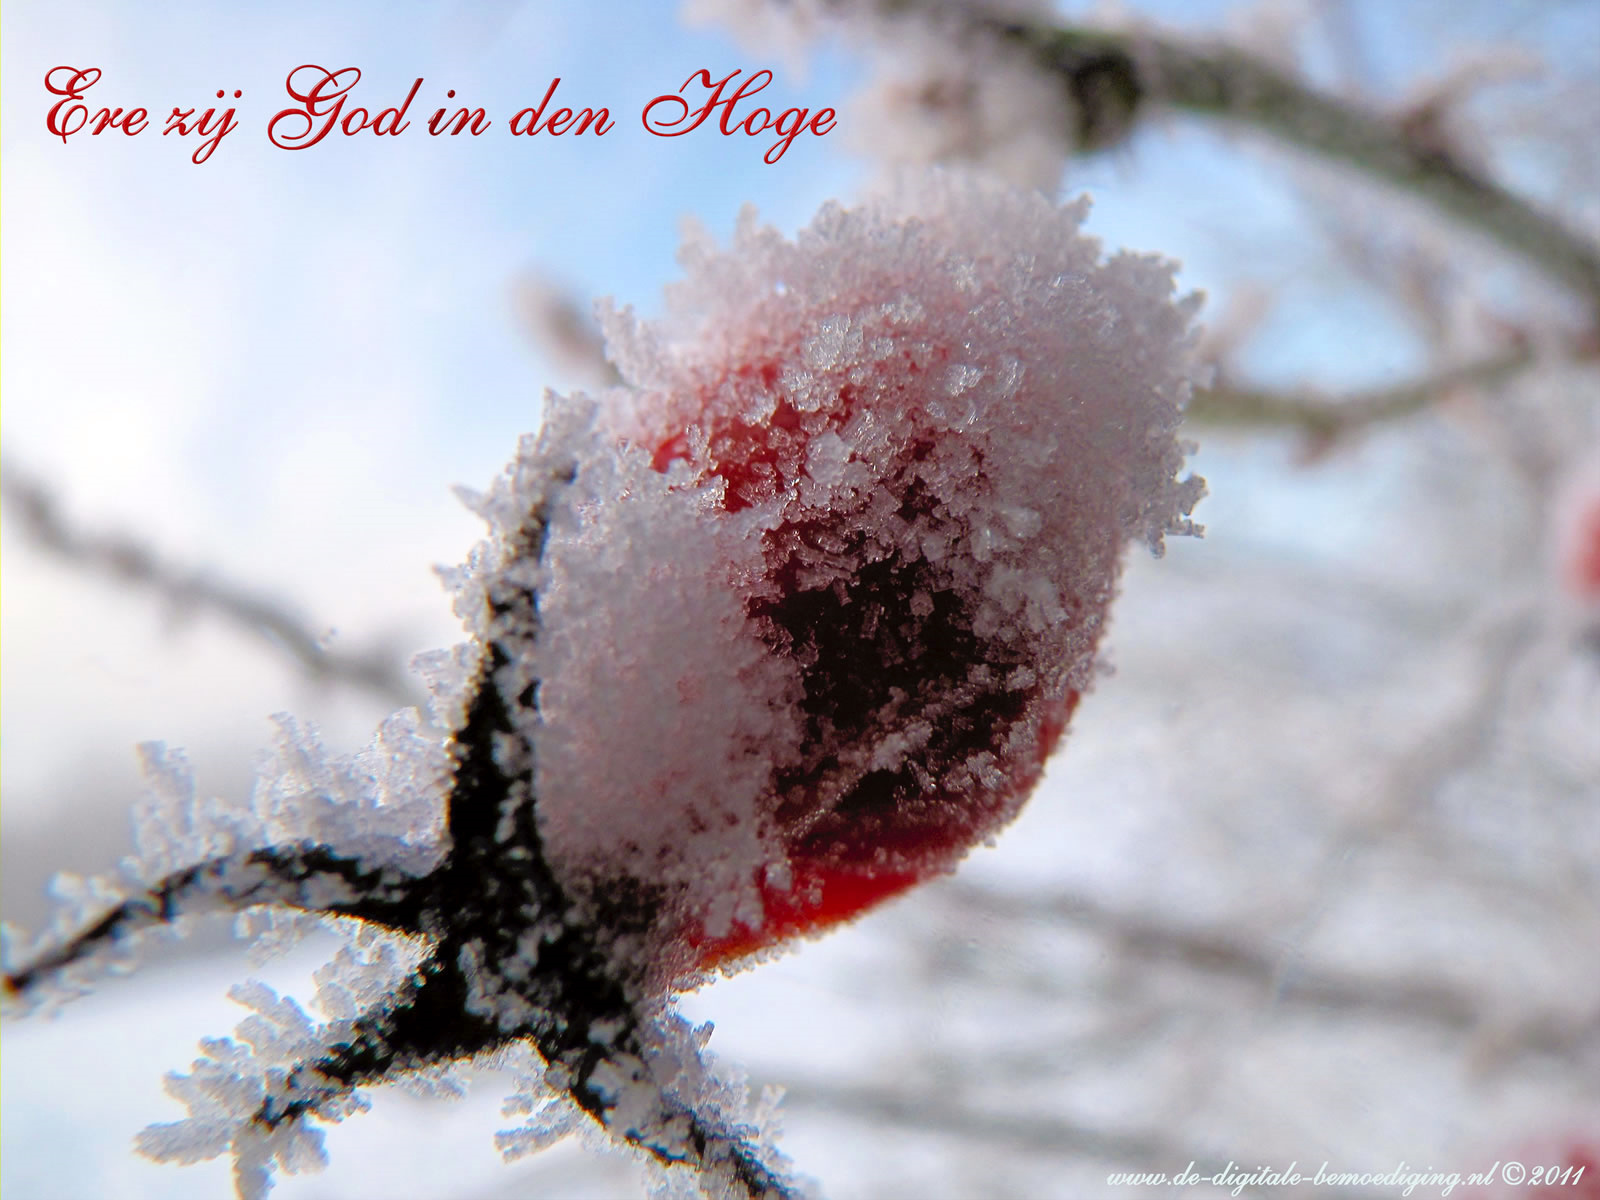 Gezegende Kerstdagen Ecard Rode Roos